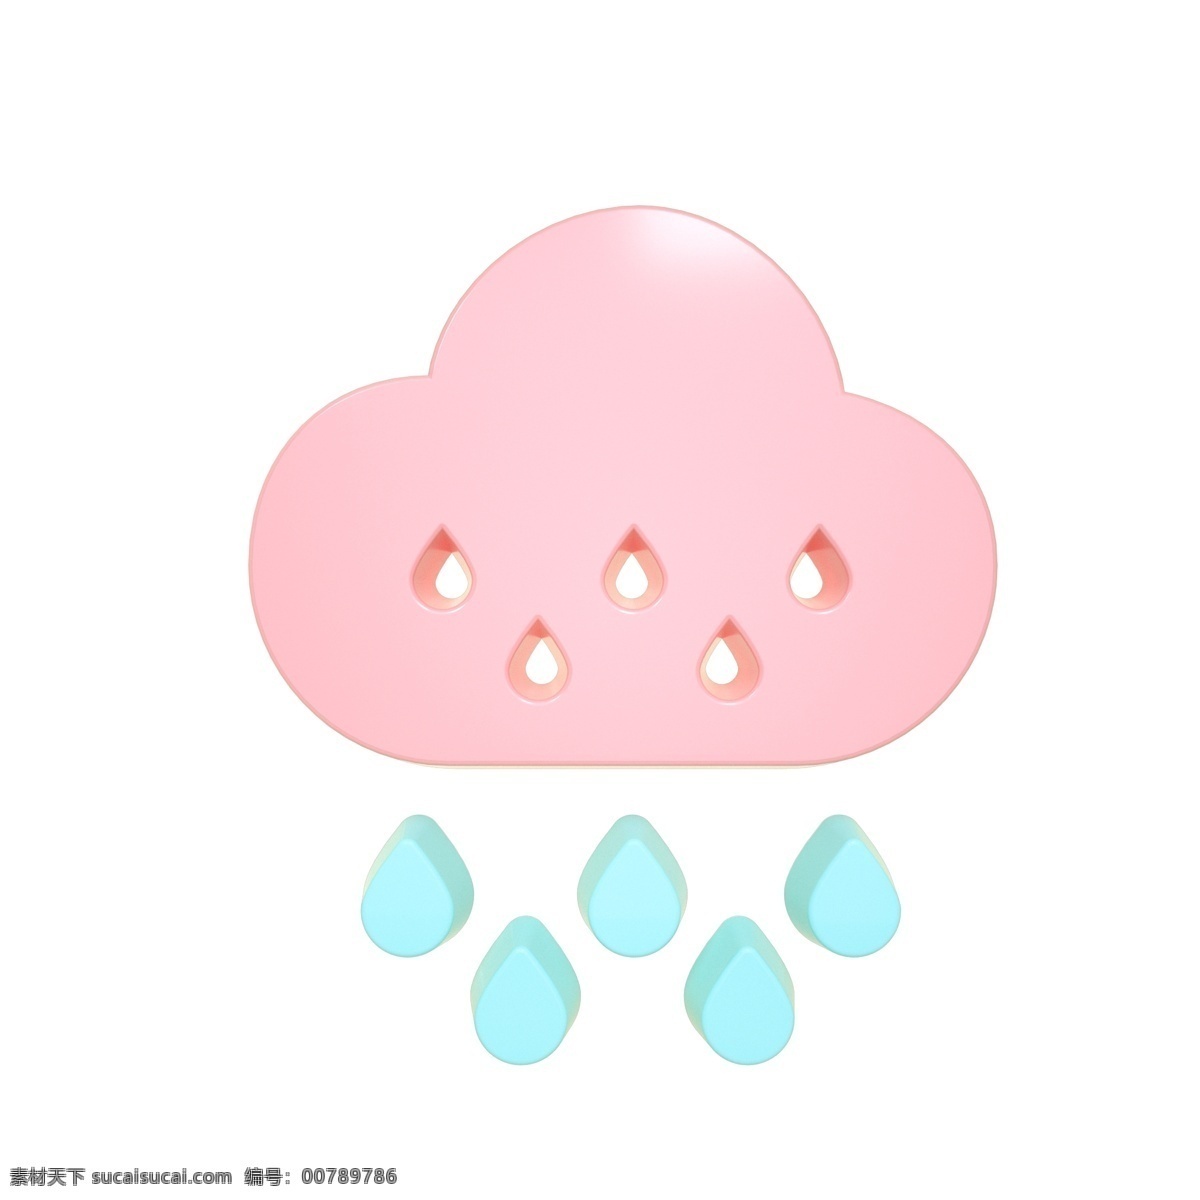 柔 色 天气 类 立体 图标 小雨 c4d 3d 柔色 粉色 青色 天气类图标 通用图标装饰 可爱 常用